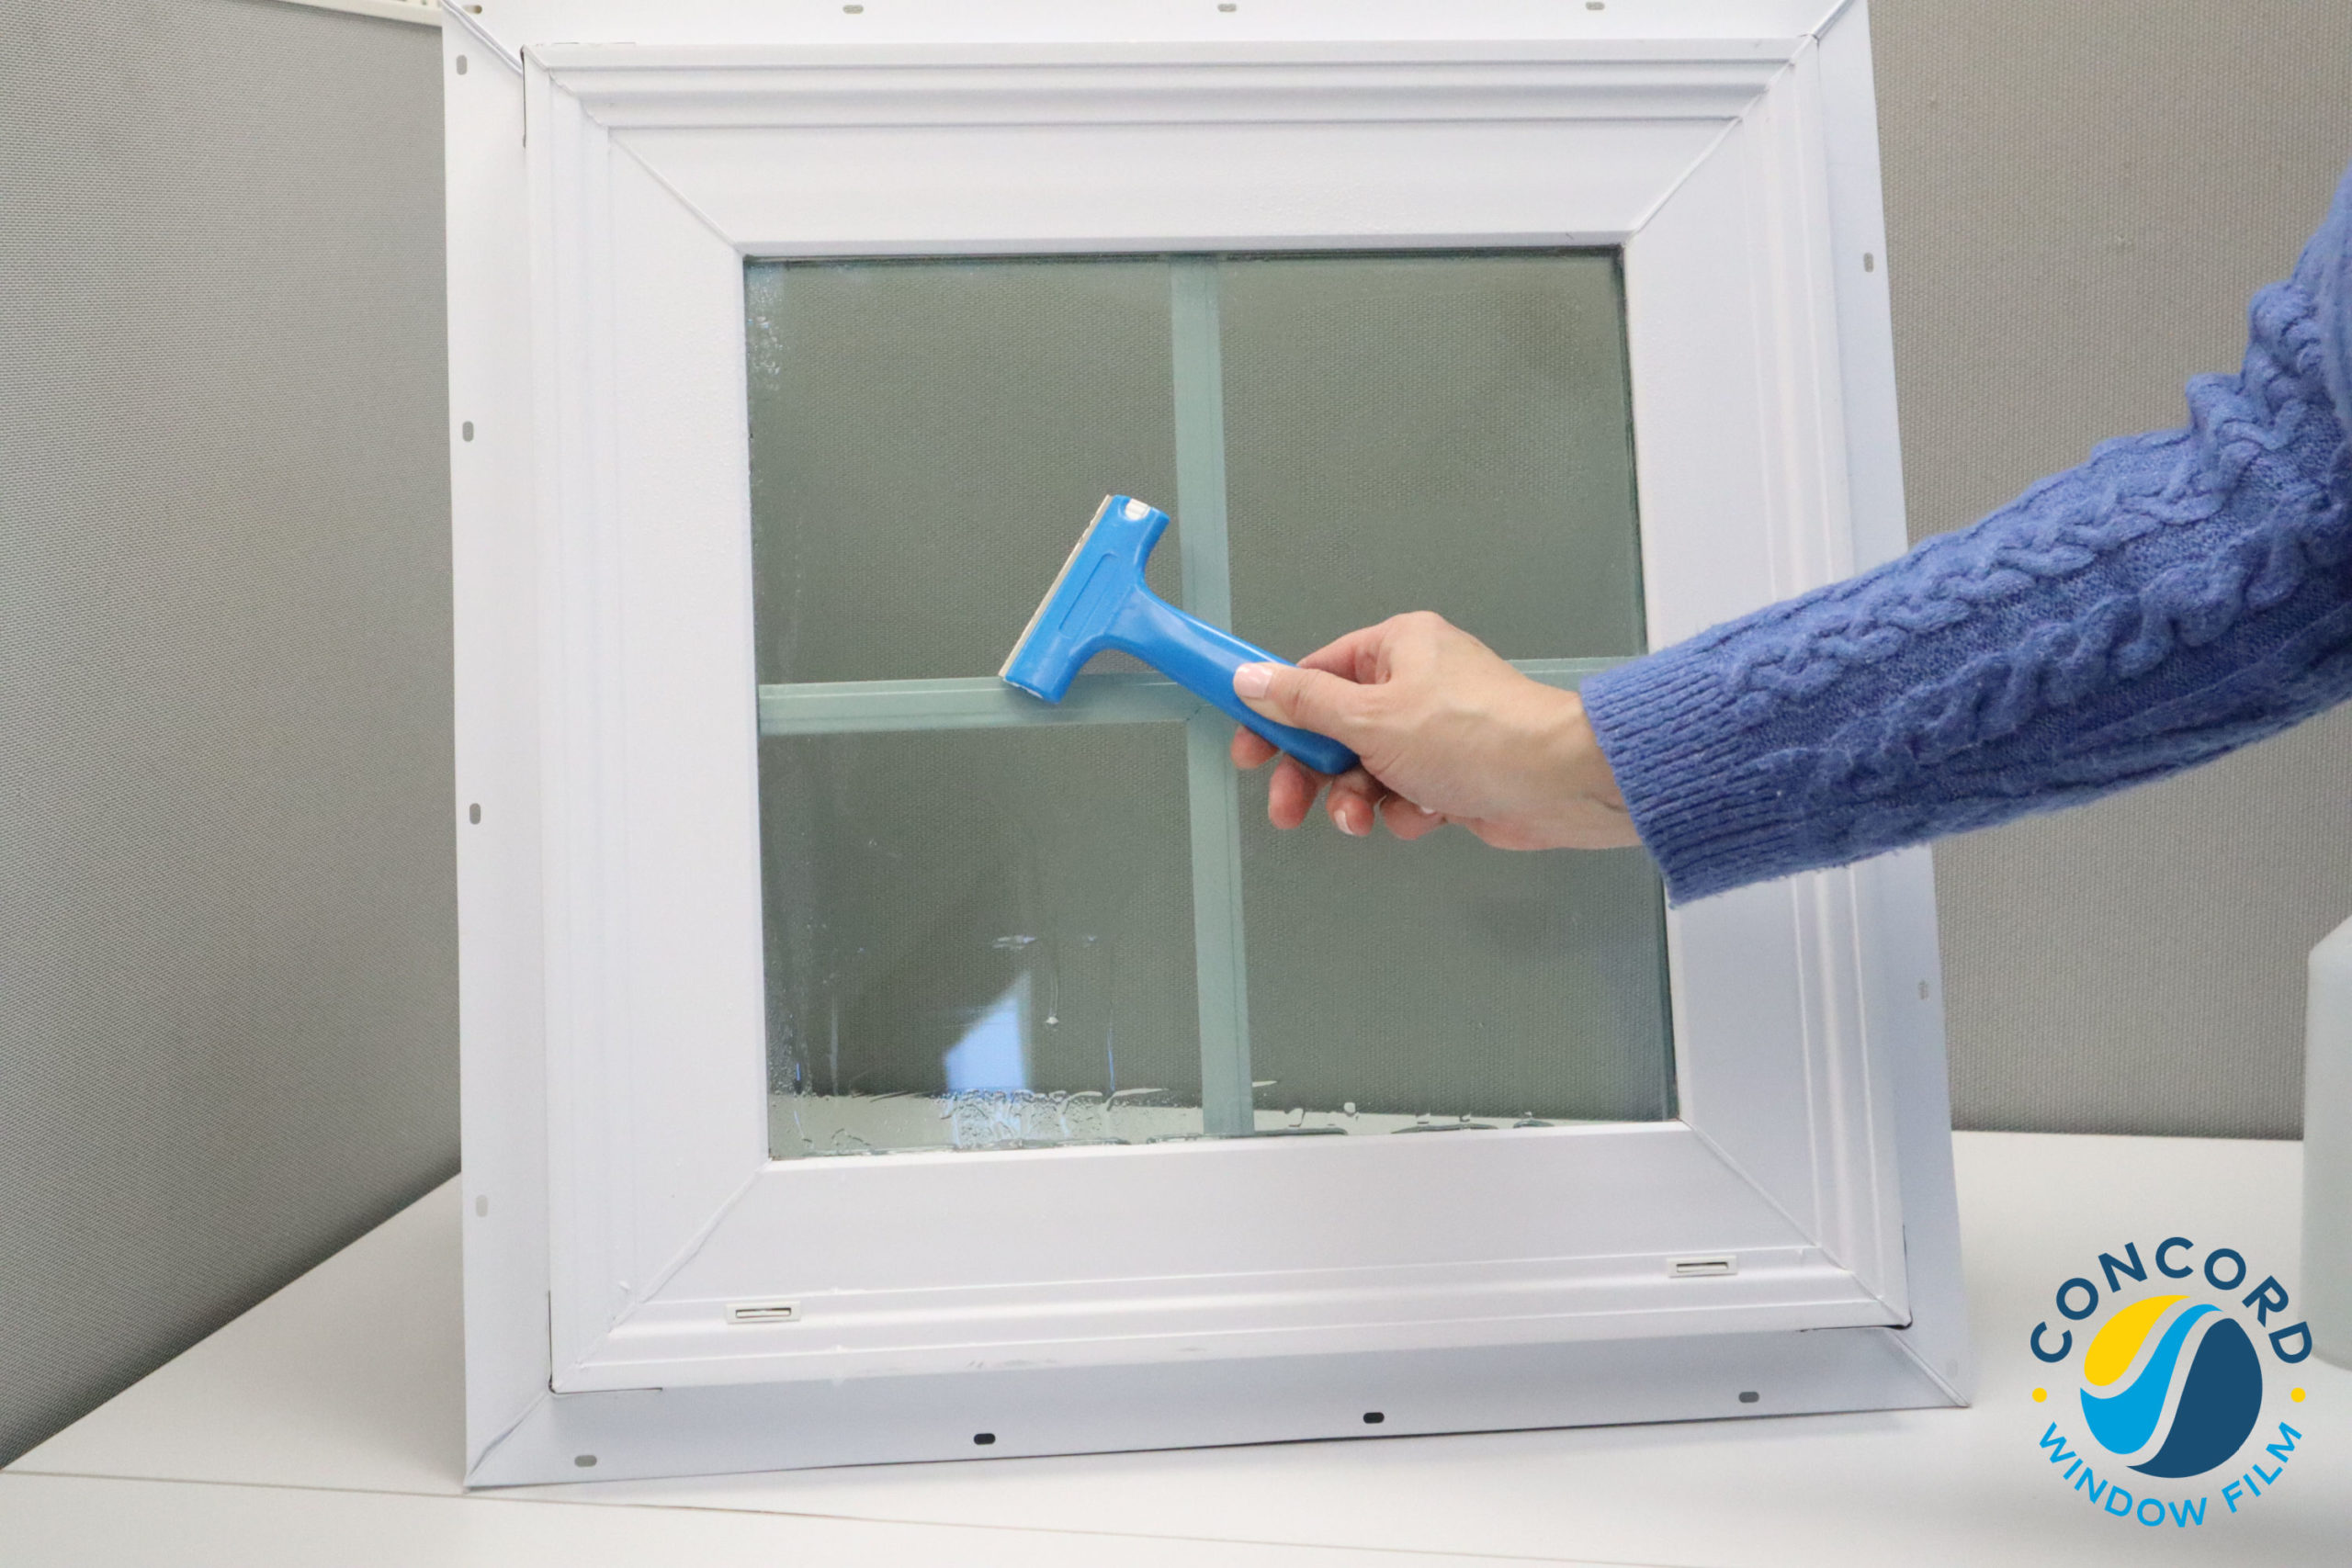 Using a razor blade scraper to remove window film adhesive